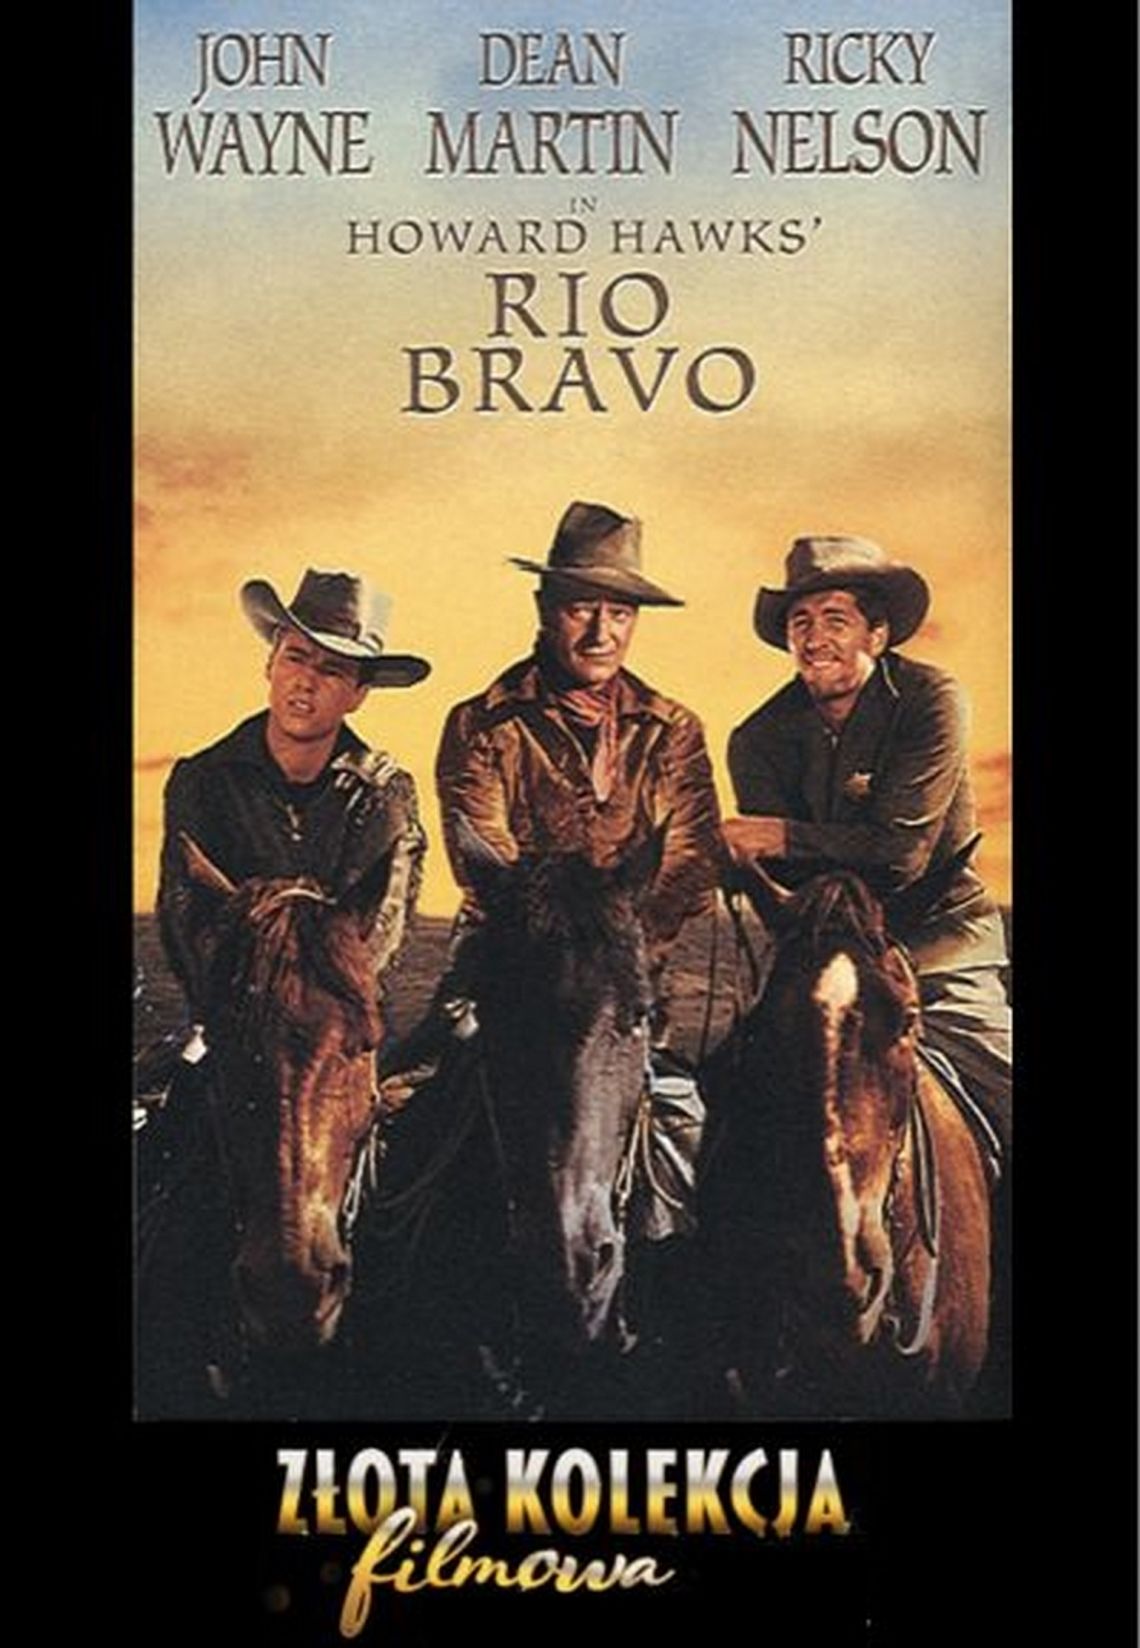 Złota Kolekcja Filmowa - RIO BRAVO